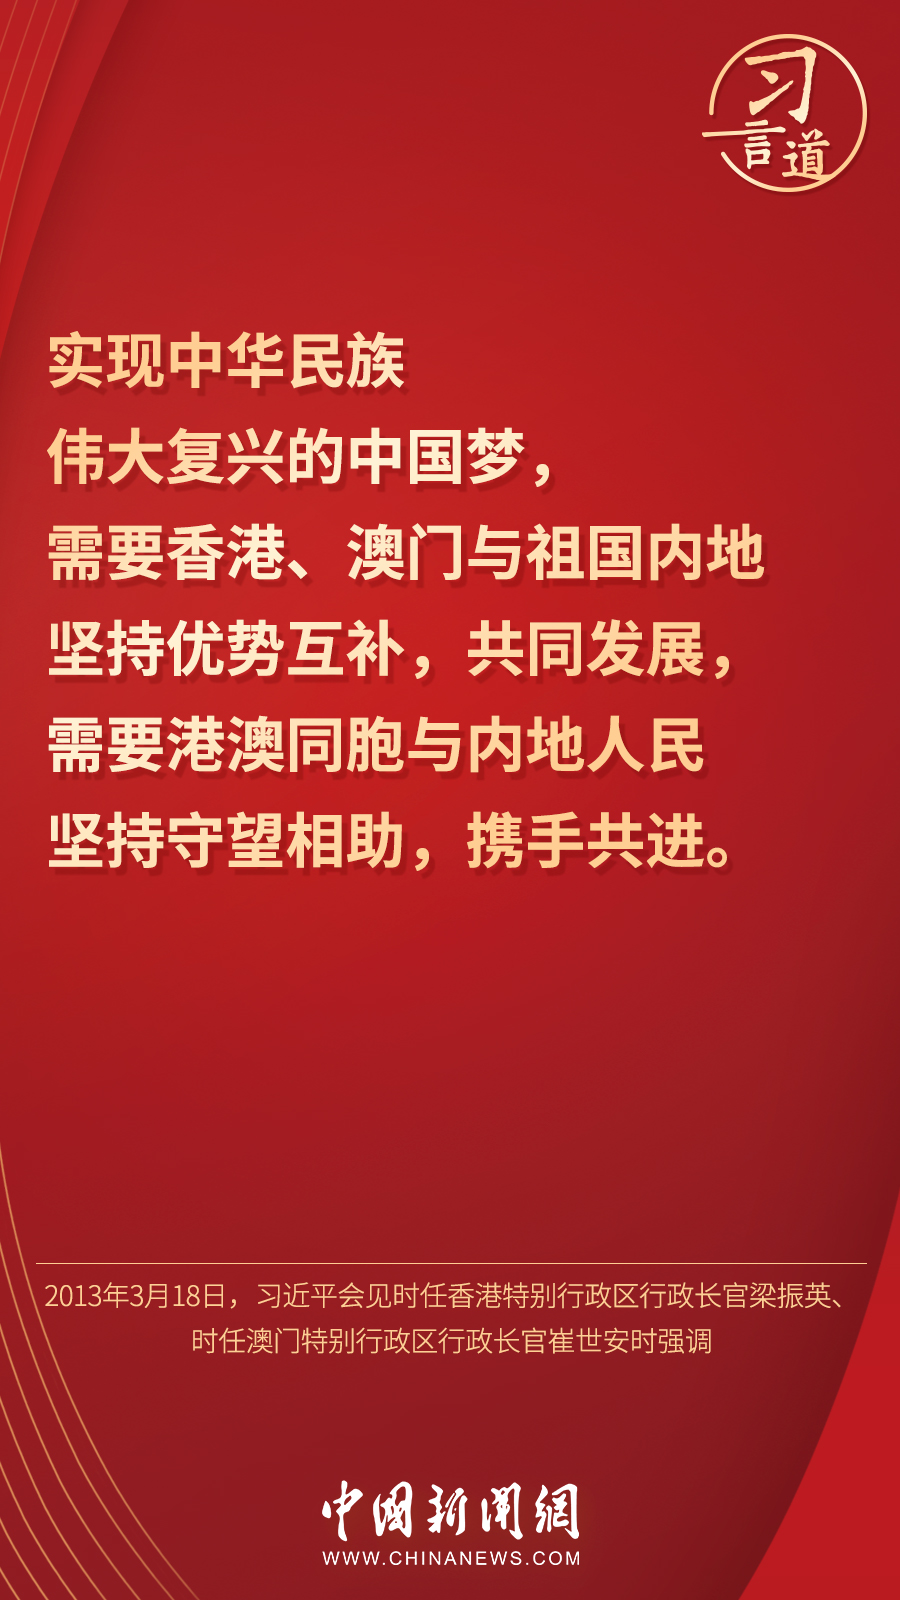 「明珠耀香江」习言道丨“香港的命运从来同祖国紧密相连”